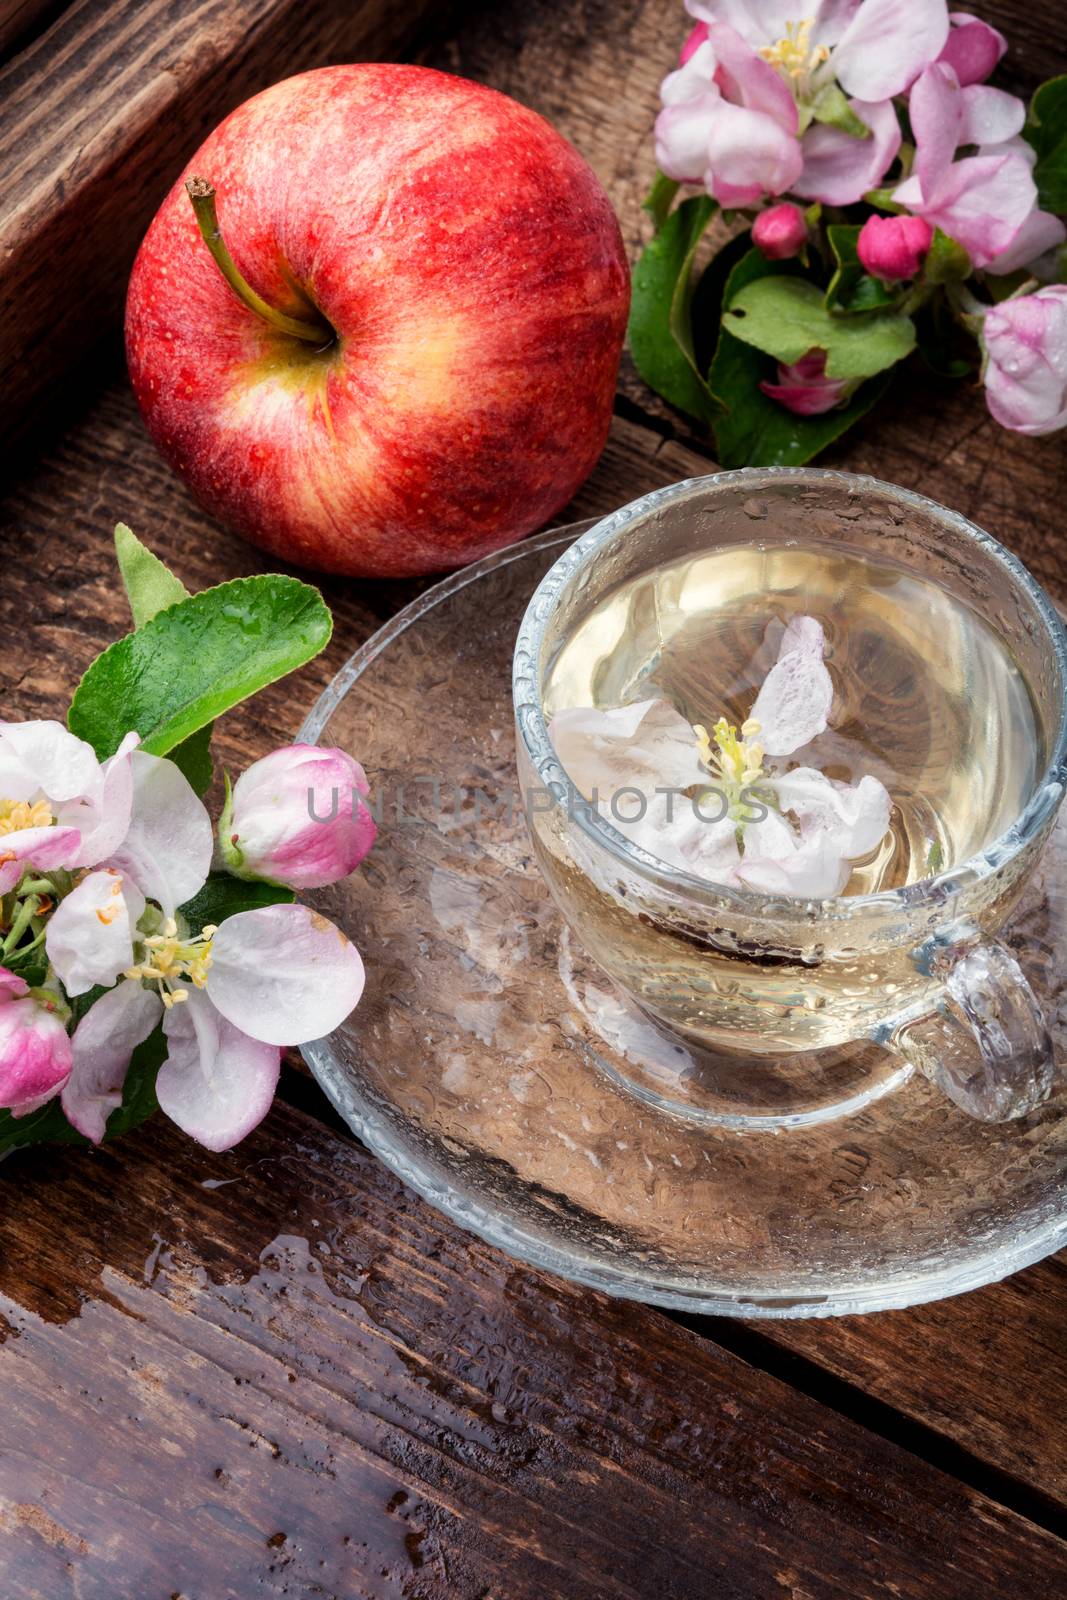 Cup of fruit tea with apple flavor.Apple tea